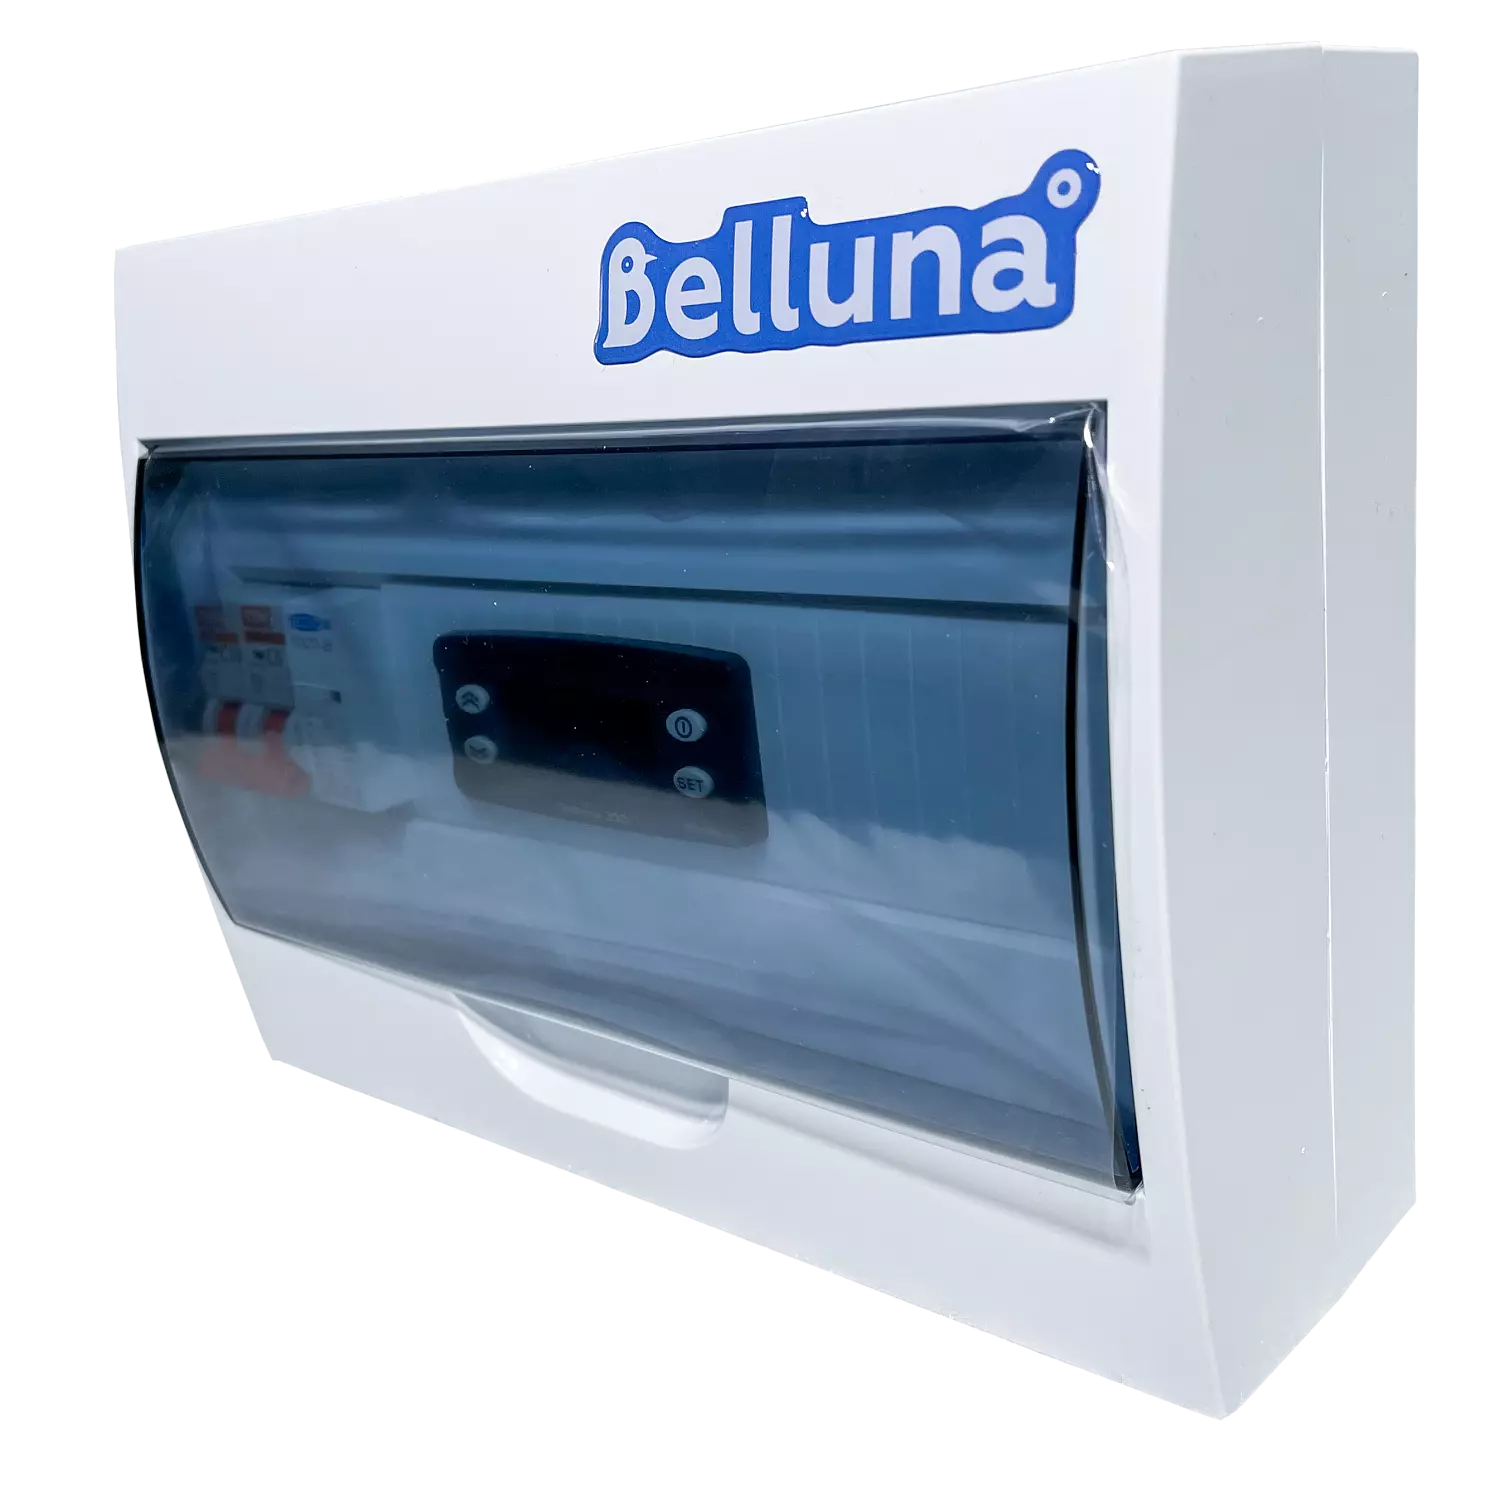 сплит-система Belluna U316 Тамбов